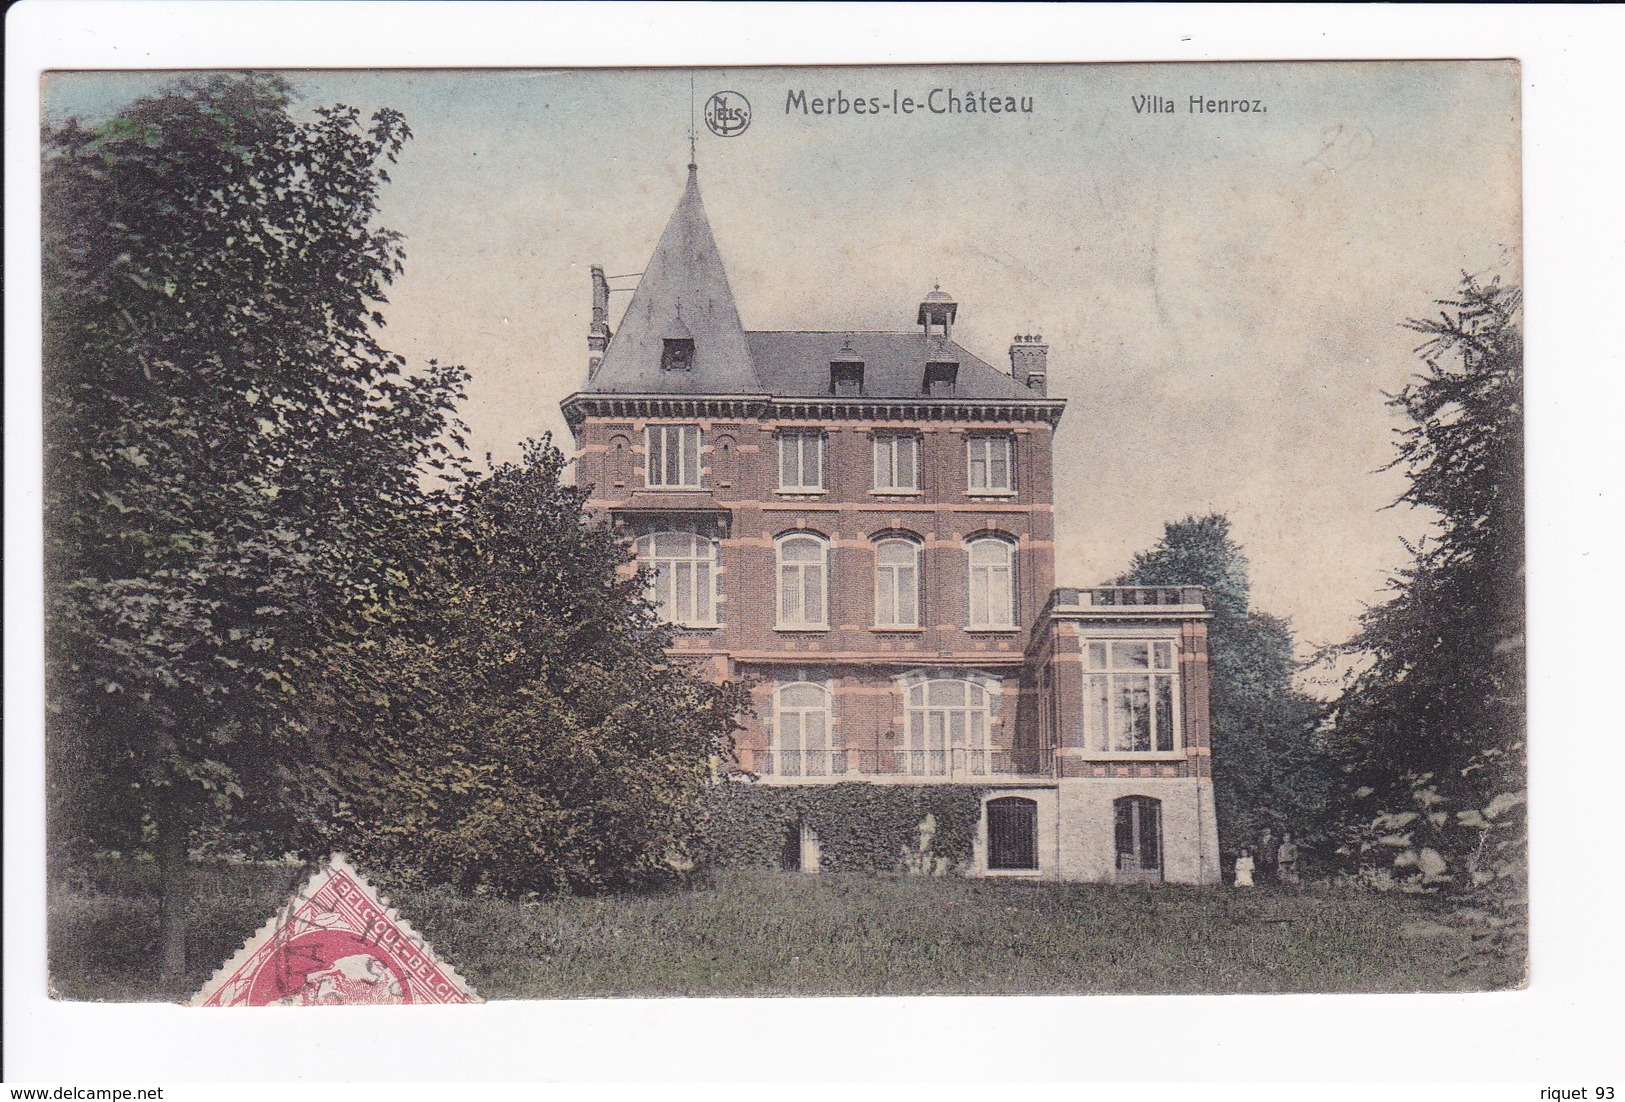 Merbes-le-Château - Villa Henroz - Merbes-le-Château